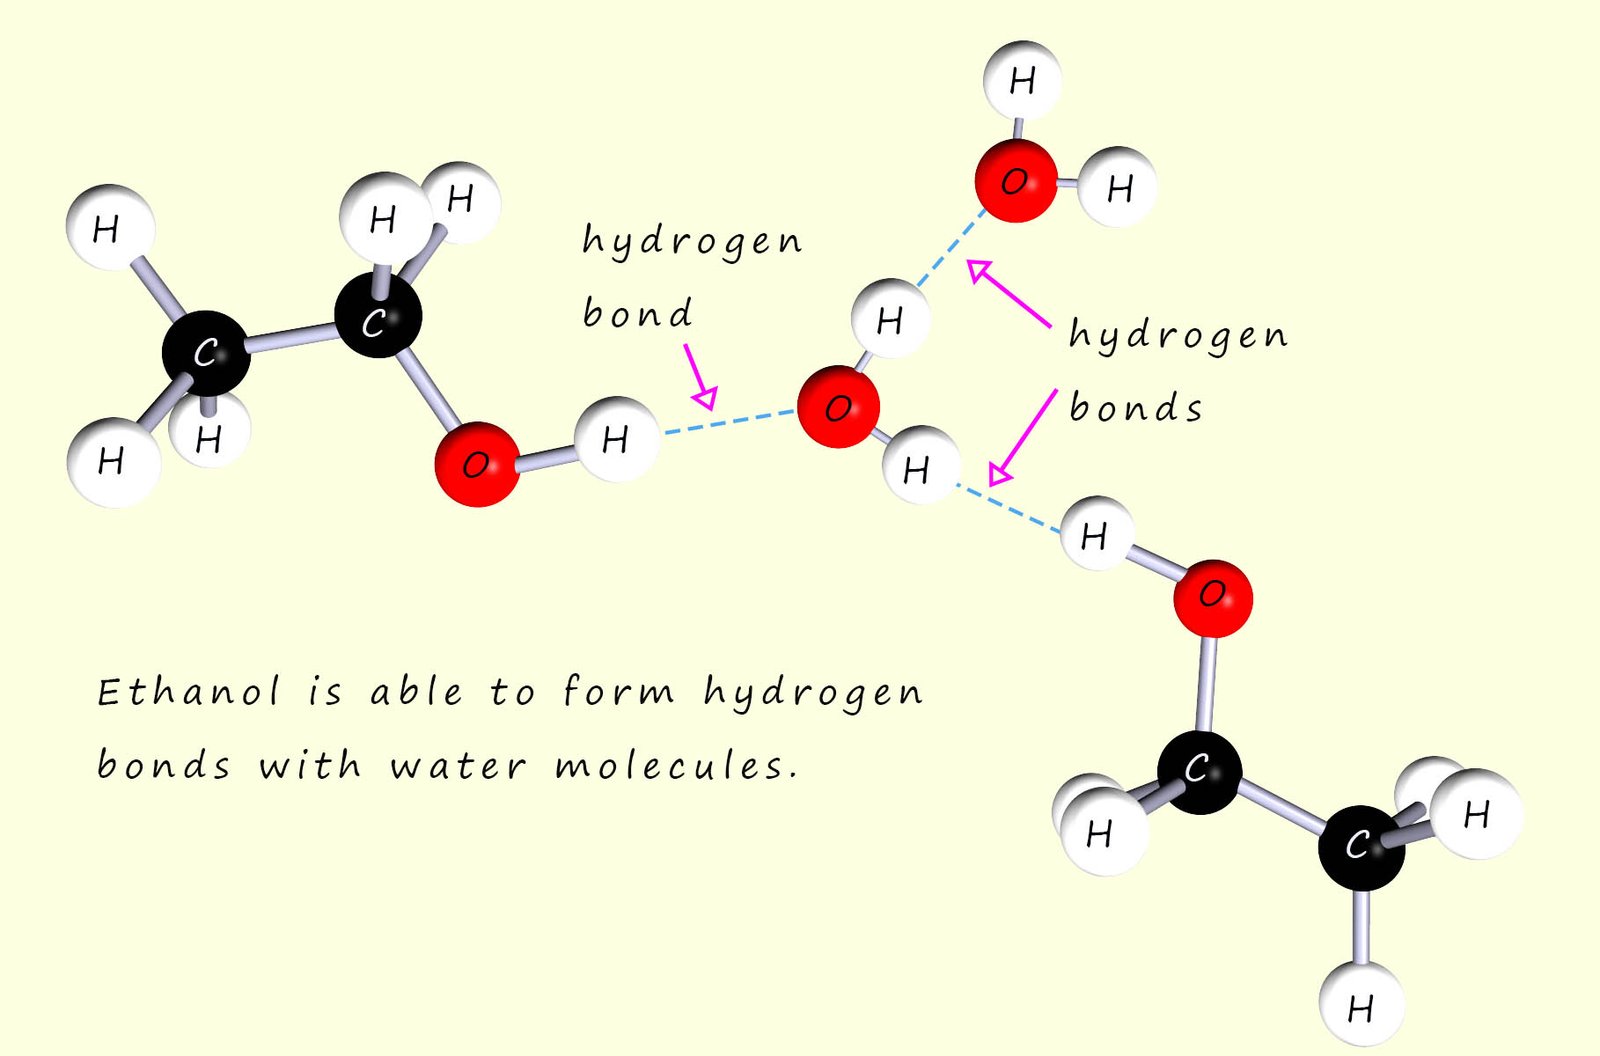 Hydrogen bonding between ethanol and water molecules